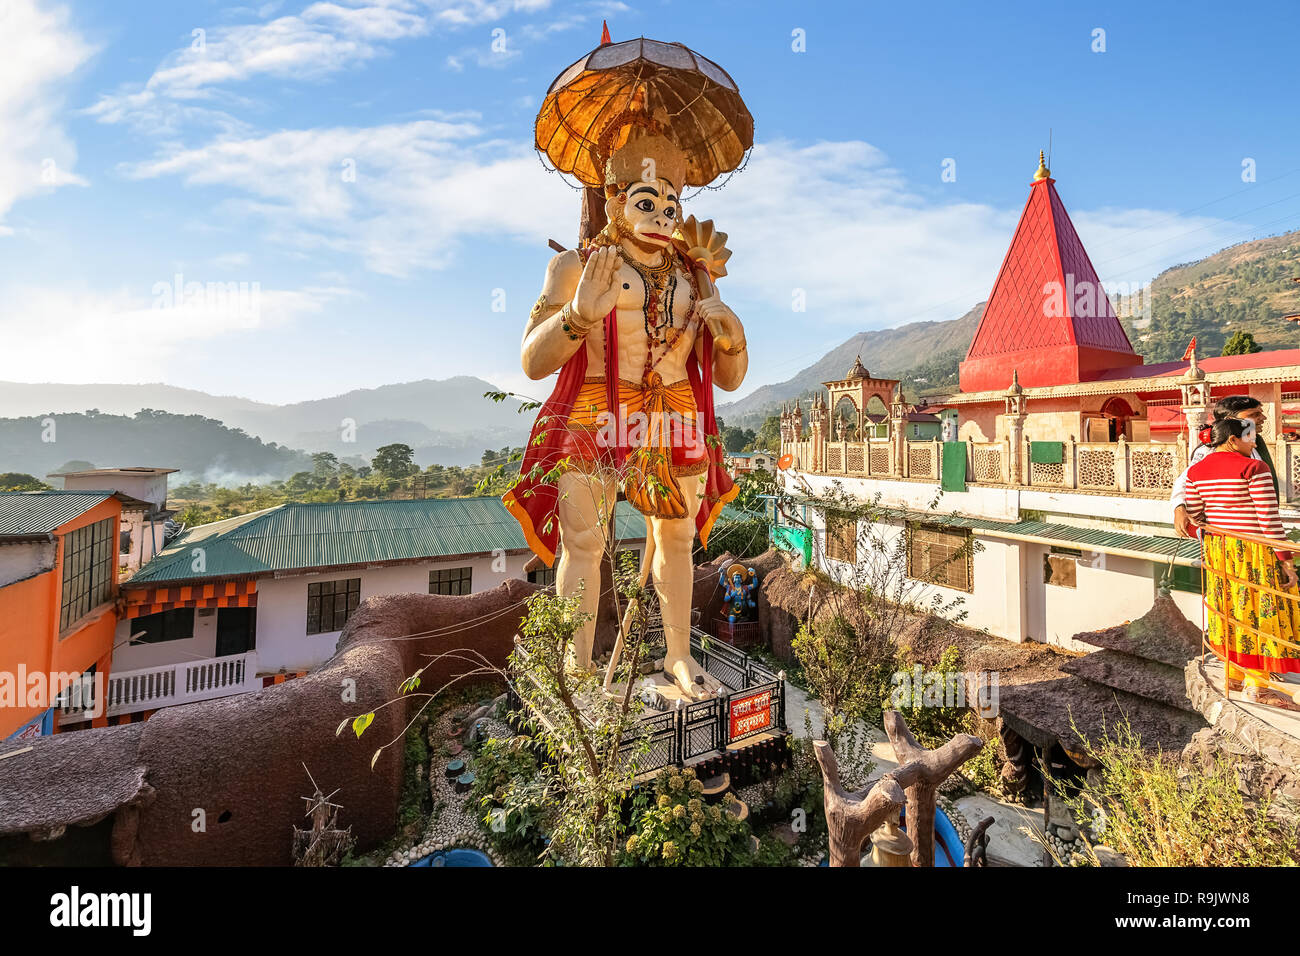 Gigantesca statua del signore Hanuman con vista del tempio di locali di Hanuman Garhi tempio indù a Nainital, Uttarakhand India. Foto Stock